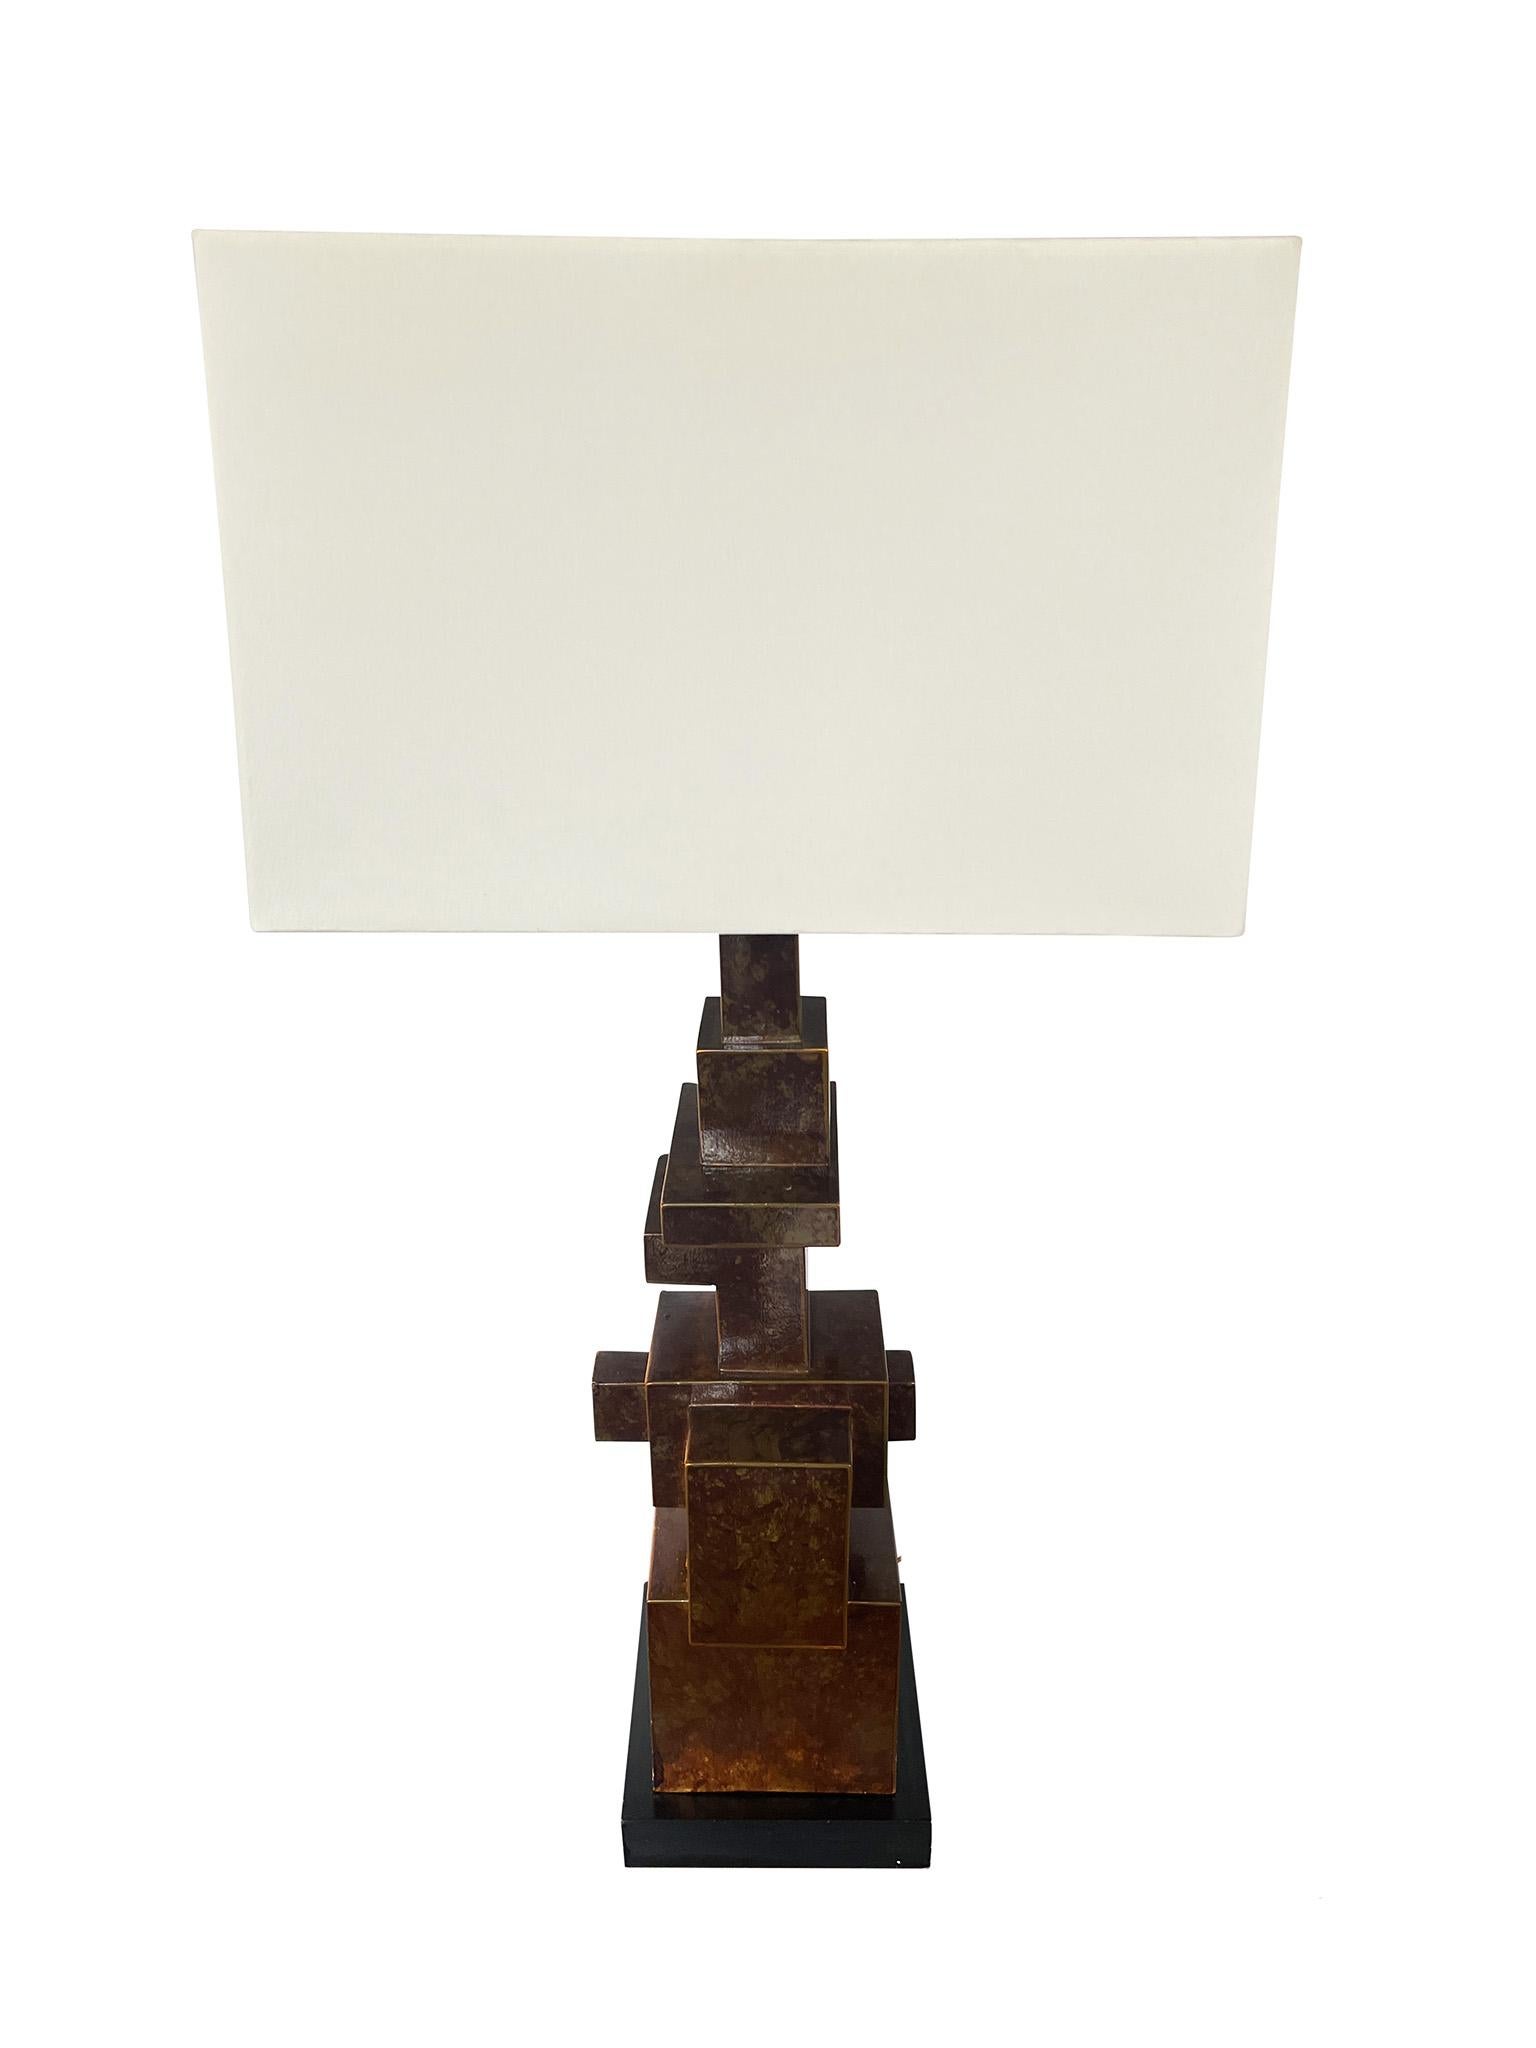 Einzigartige italienische Tischlampe im Stil des Brutalismus. Die aus patiniertem Metall mit schwarzem Holzsockel gefertigte Leuchte zeichnet sich durch ihre ungewöhnlich geformte und architektonische Komposition, die strukturierte Oberfläche und